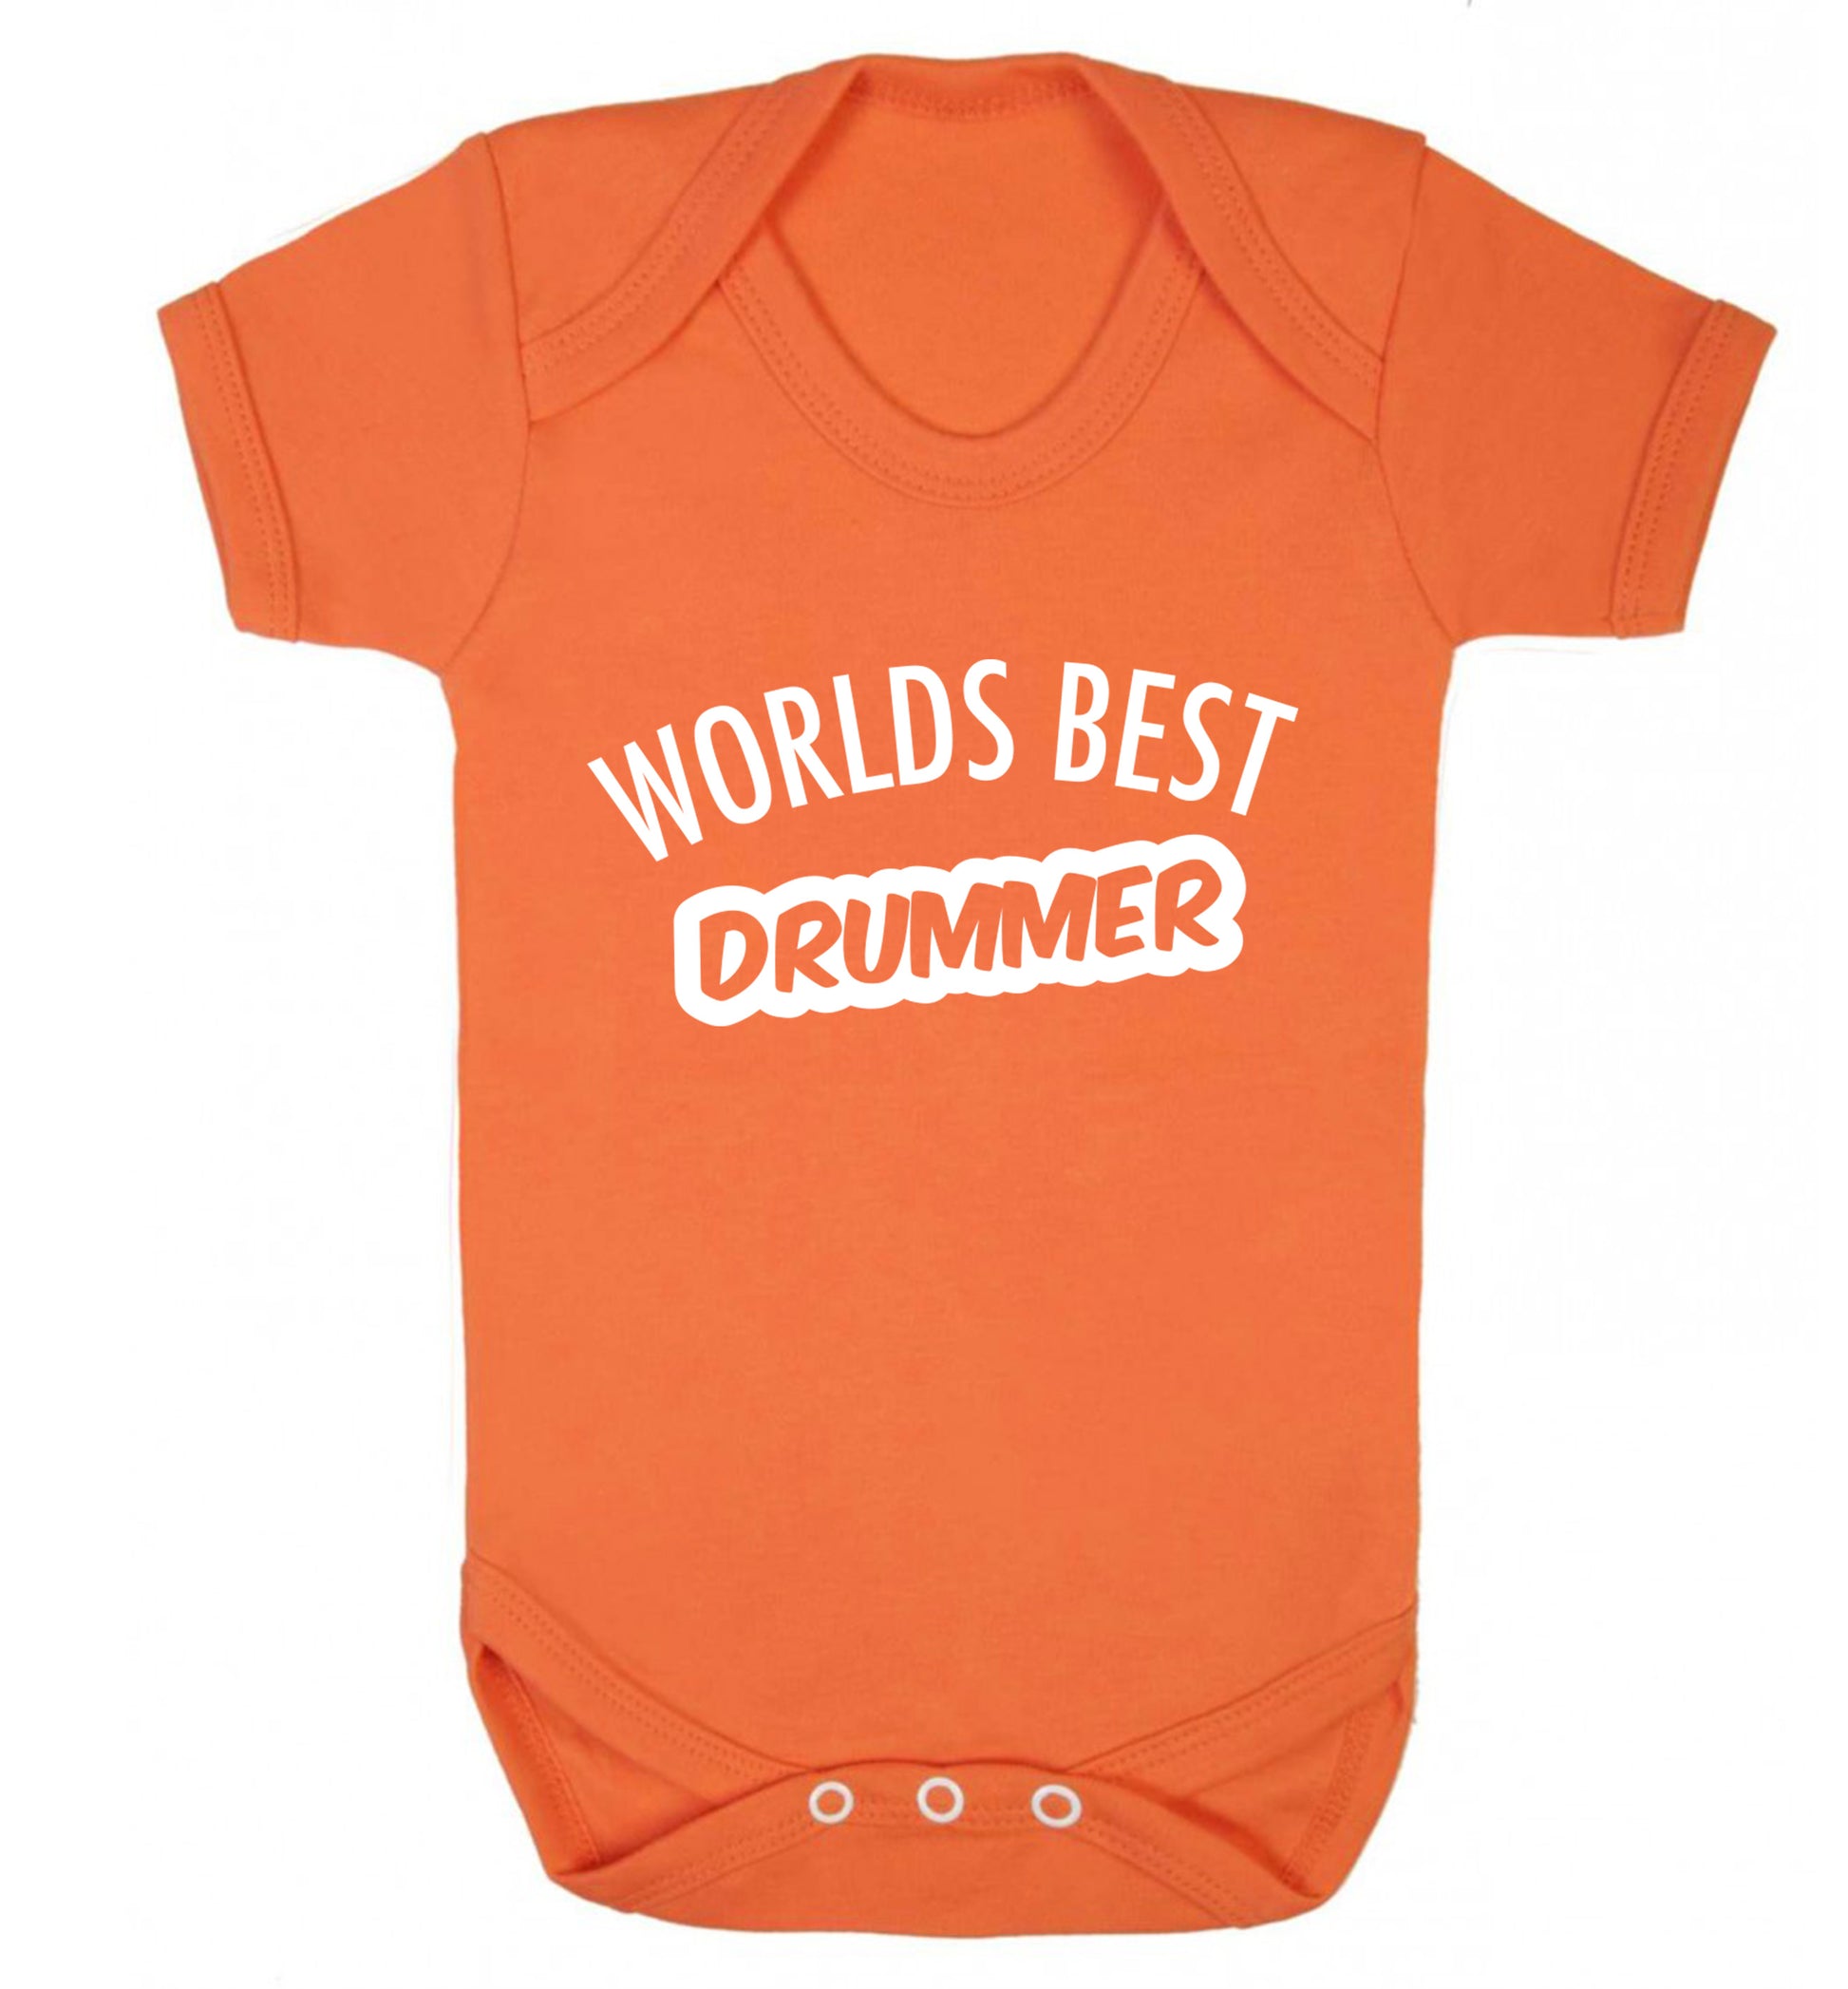 Worlds best drummer Baby Vest orange 18-24 months